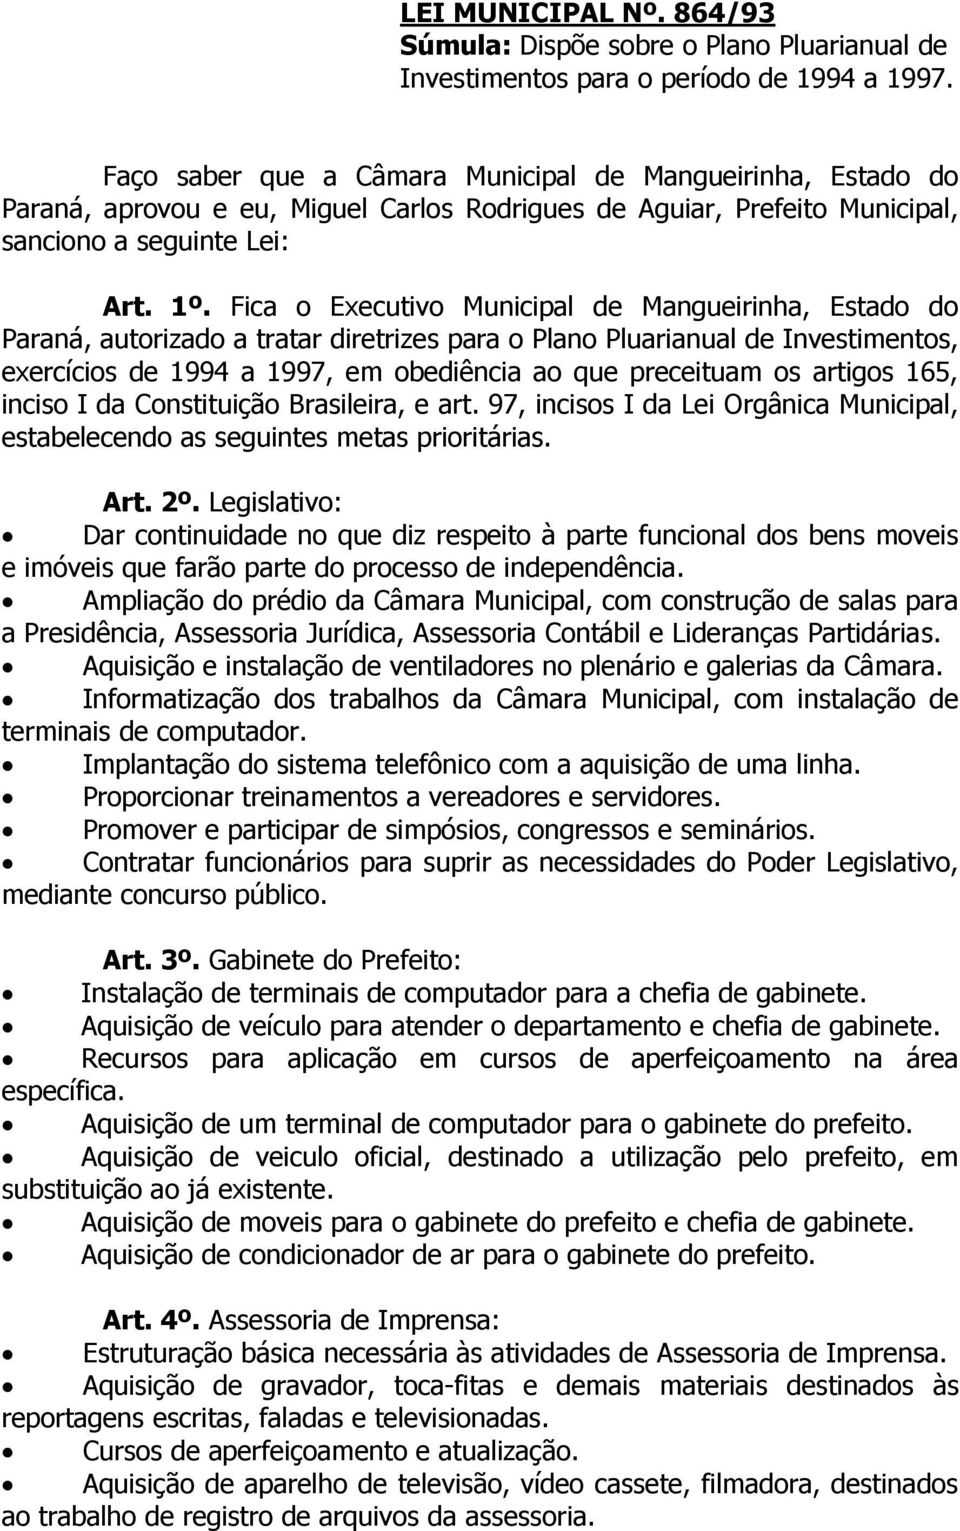 Fica o Executivo Municipal de Mangueirinha, Estado do Paraná, autorizado a tratar diretrizes para o Plano Pluarianual de Investimentos, exercícios de 1994 a 1997, em obediência ao que preceituam os